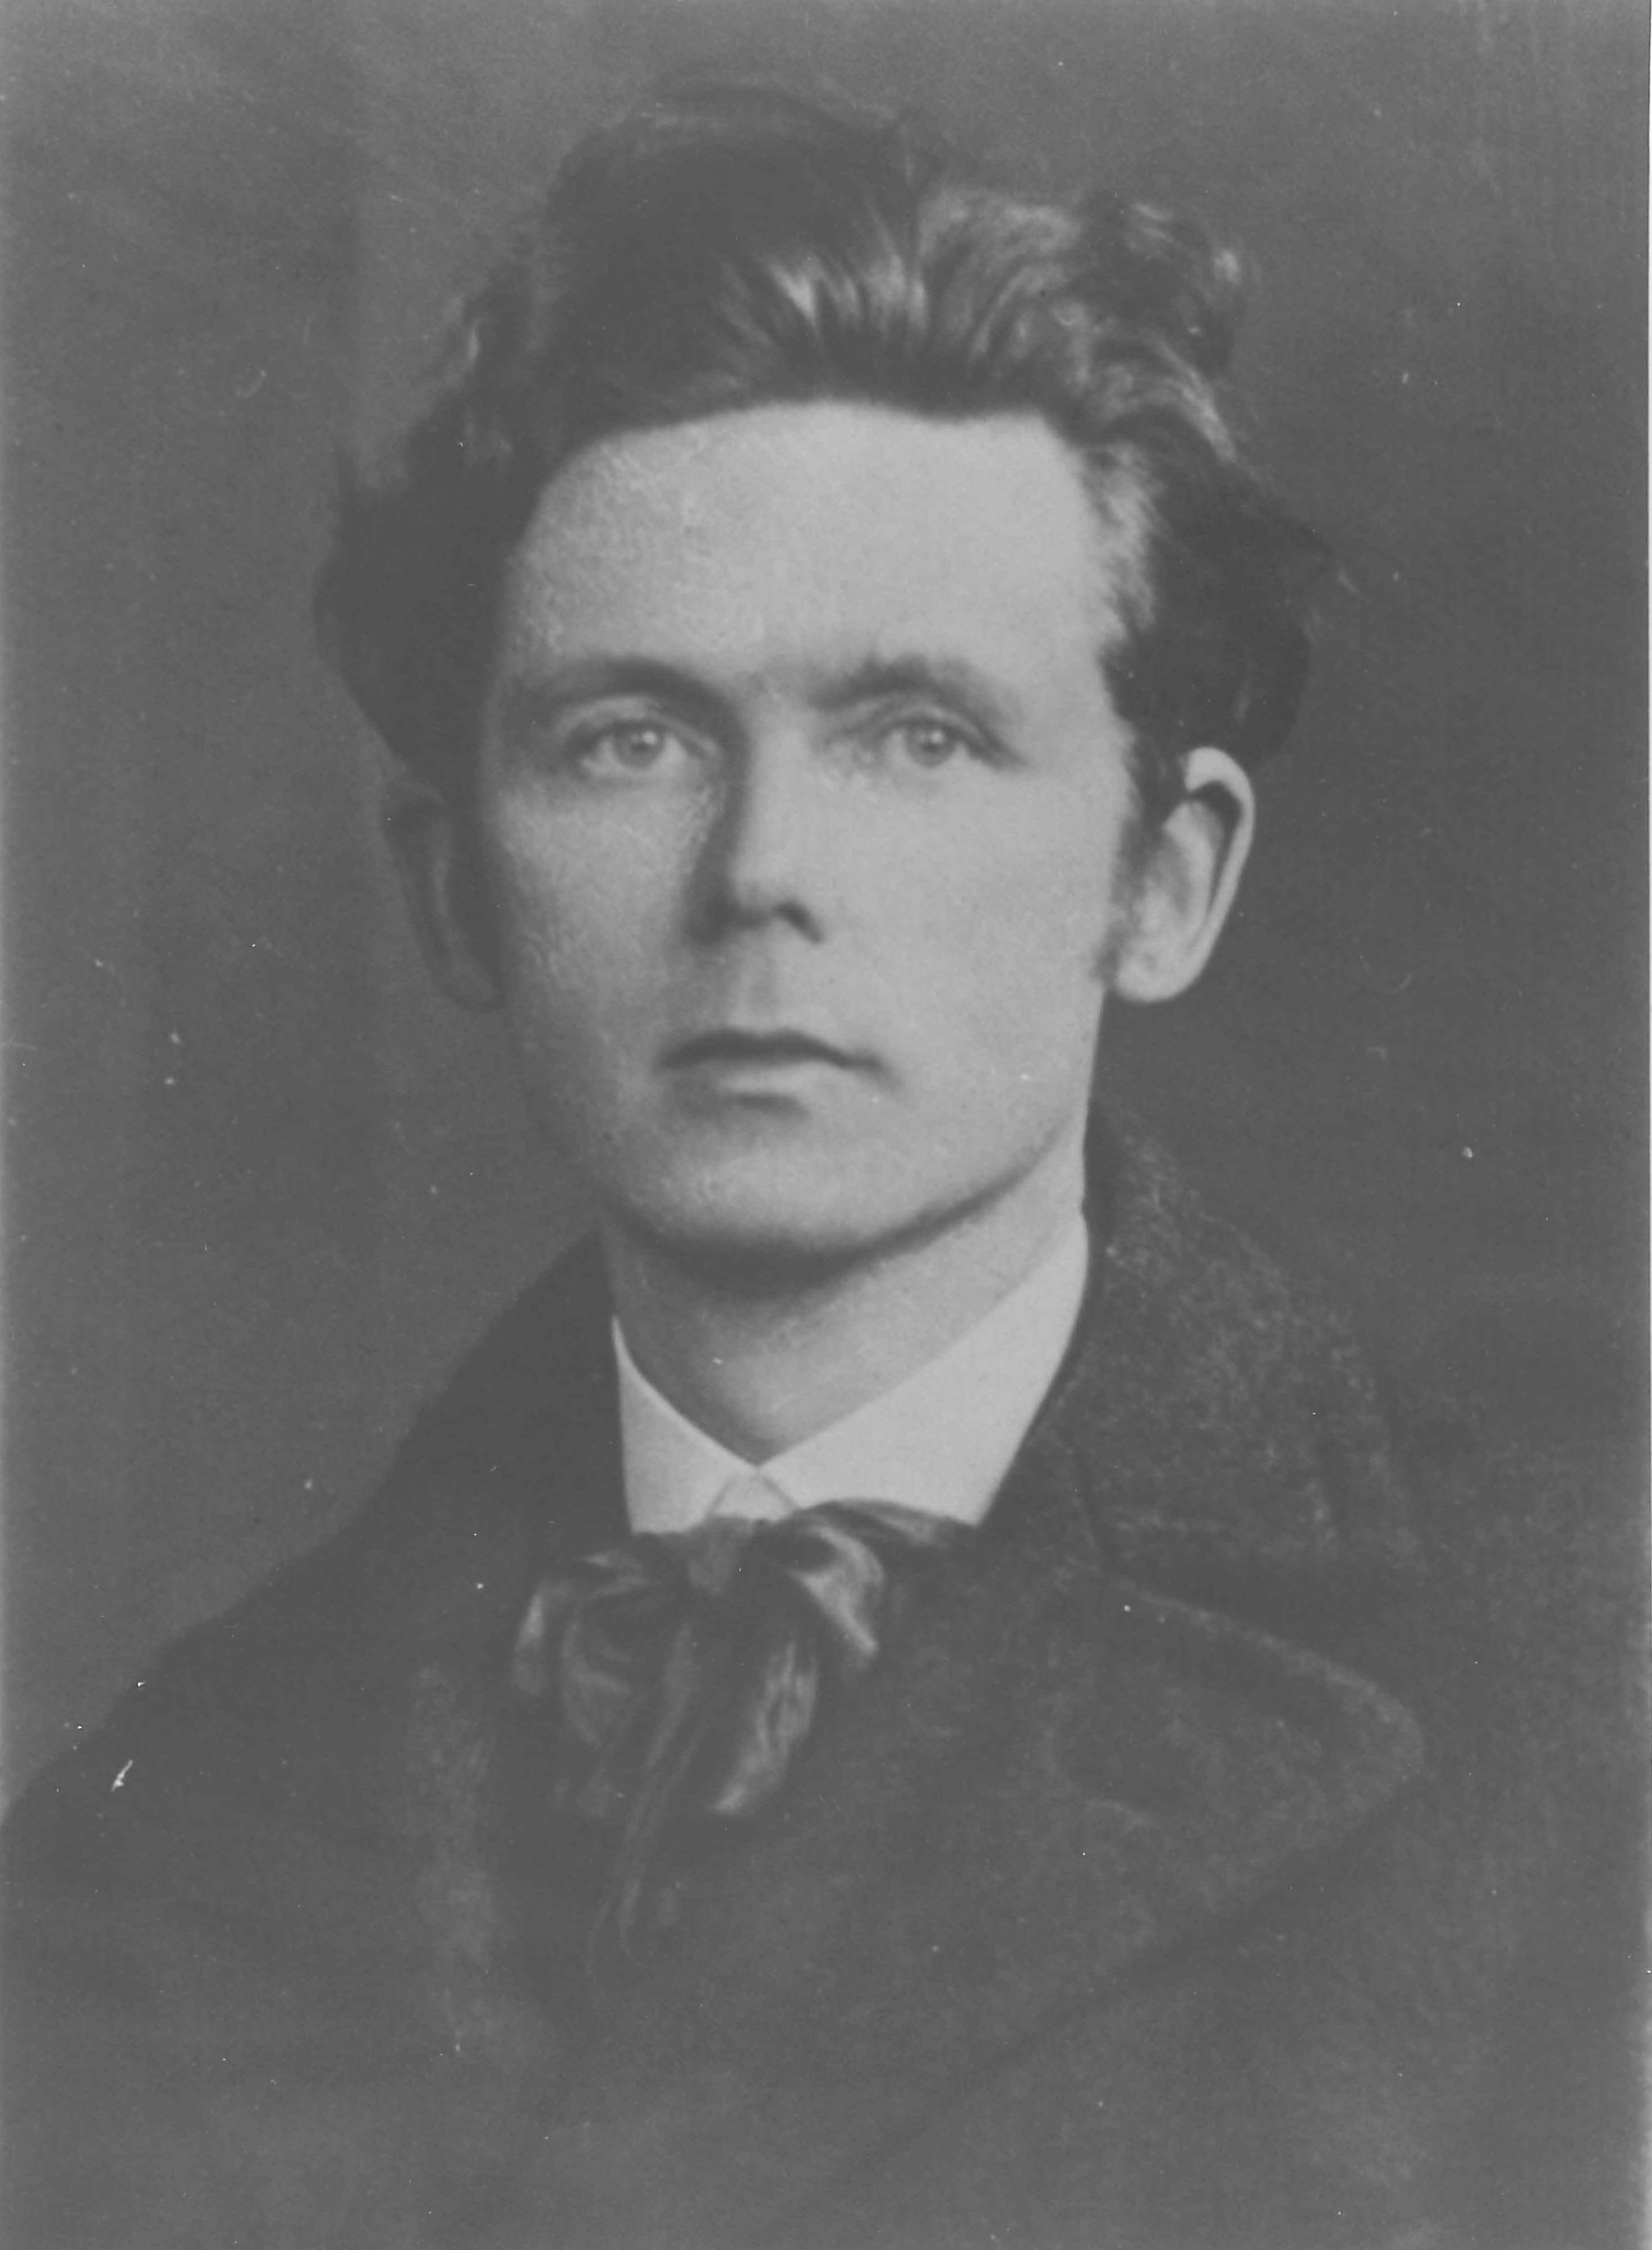 2. Hendrik de Vries around 1925